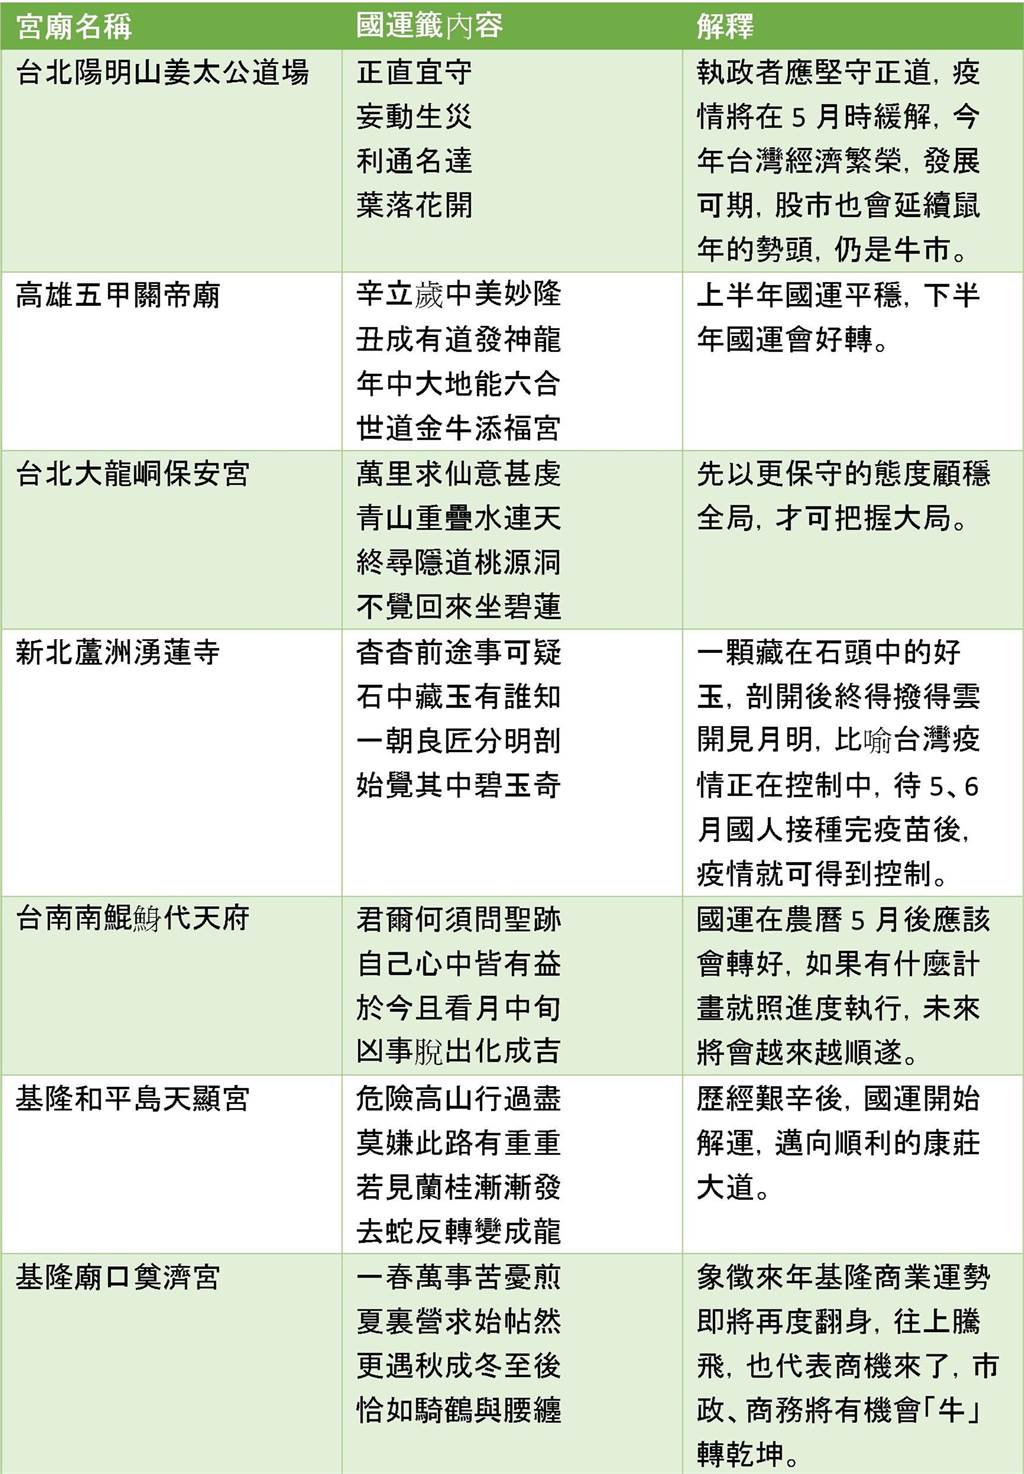 圖https://images.chinatimes.com/newsphoto/2021-02-12/1024/20210212002414.jpg, Re: [問卦] 神明們是不是聯合起來懲罰台灣人了？